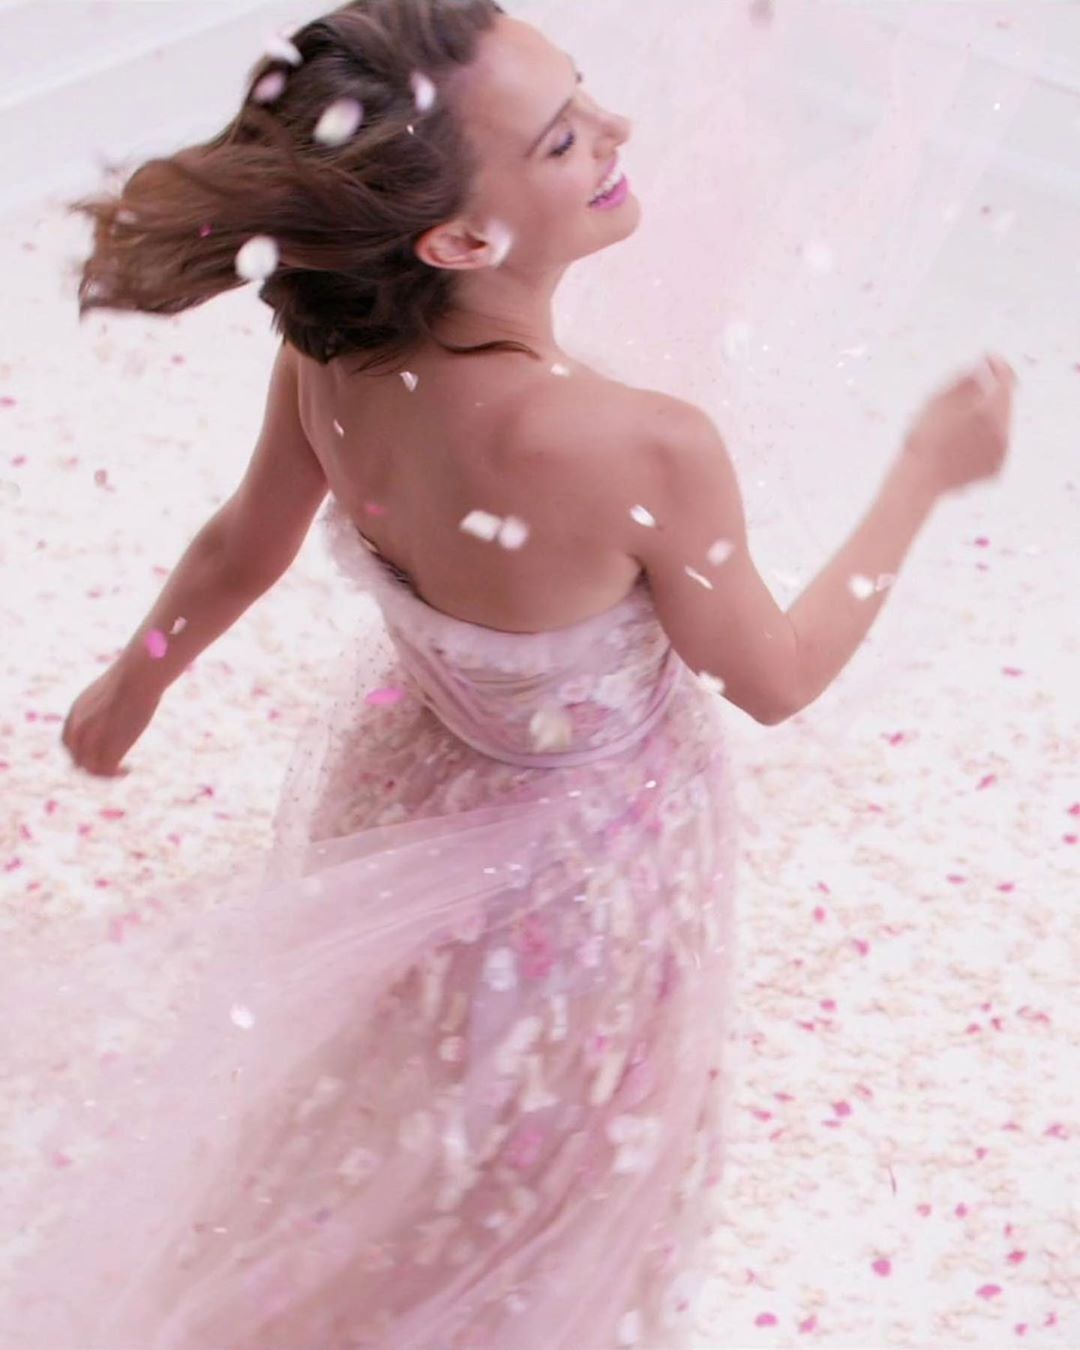 ИЛЬ ДЕ БОТЭ - Платье Miss Dior было создано@MariaGraziaChiuri специально для потрясающей Натали Портман.

Платье расписанное вручную и расшитое шелковыми цветами на розовом тюле. платье кружится в ви...